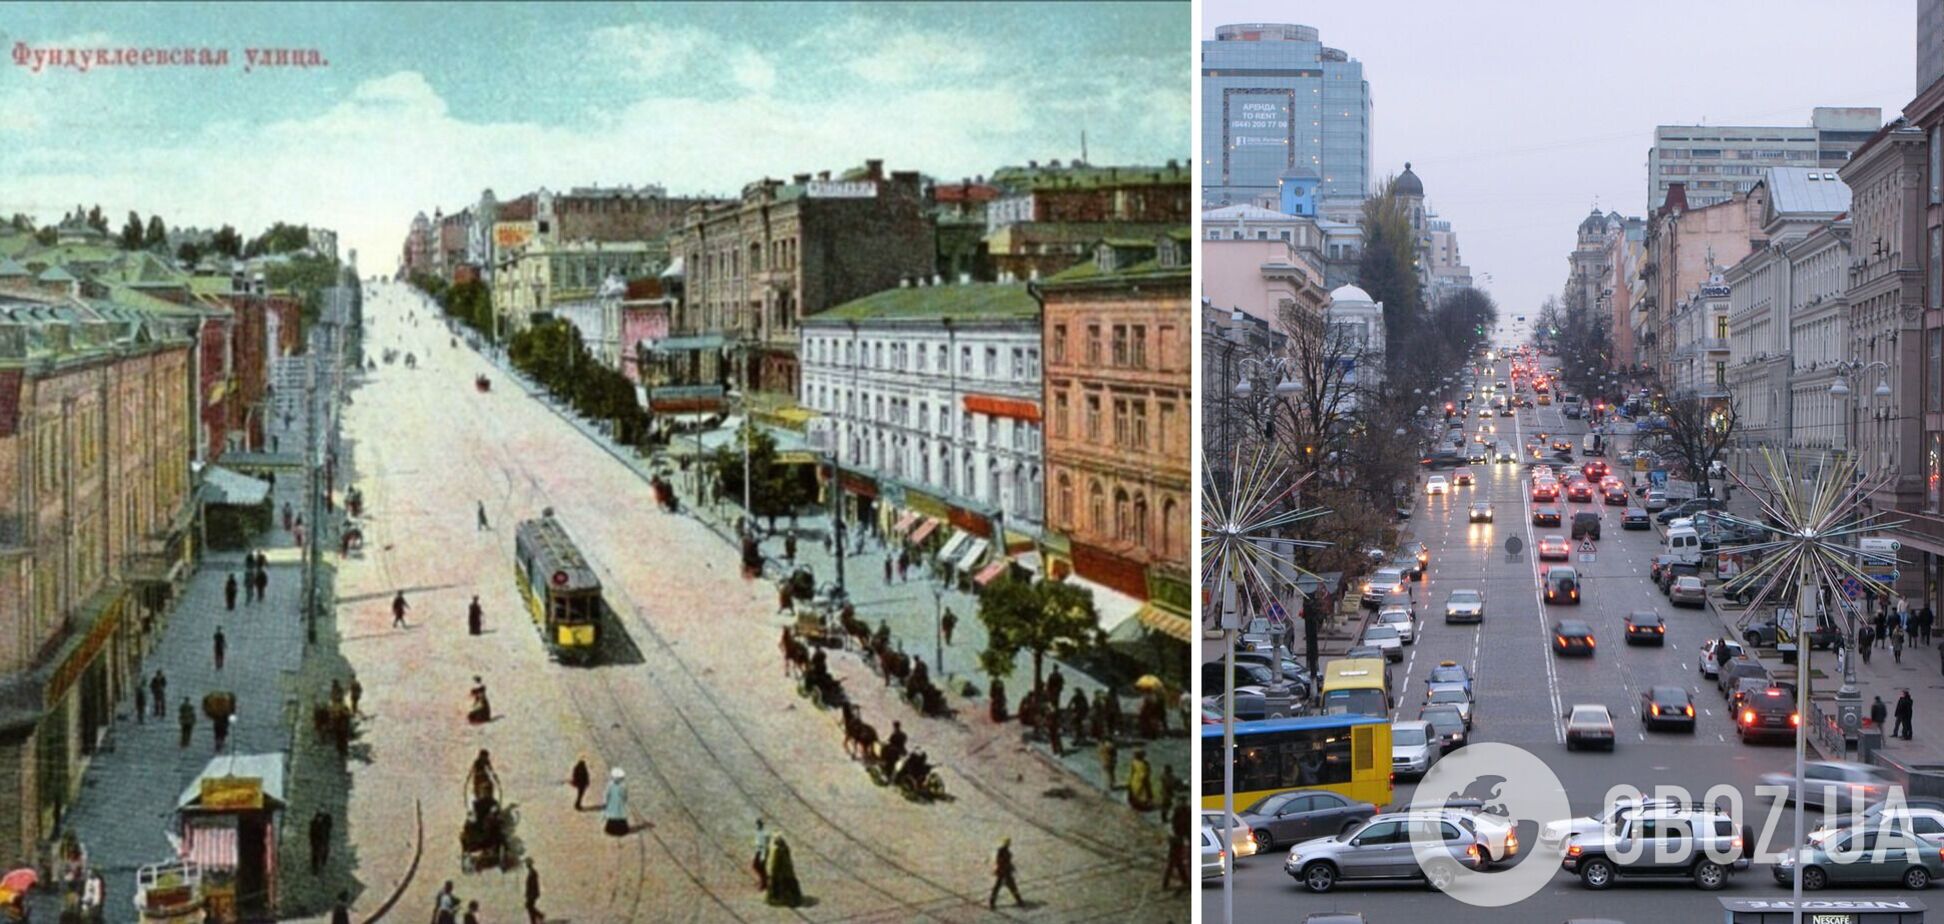 Улица Киева, которая имела странное название